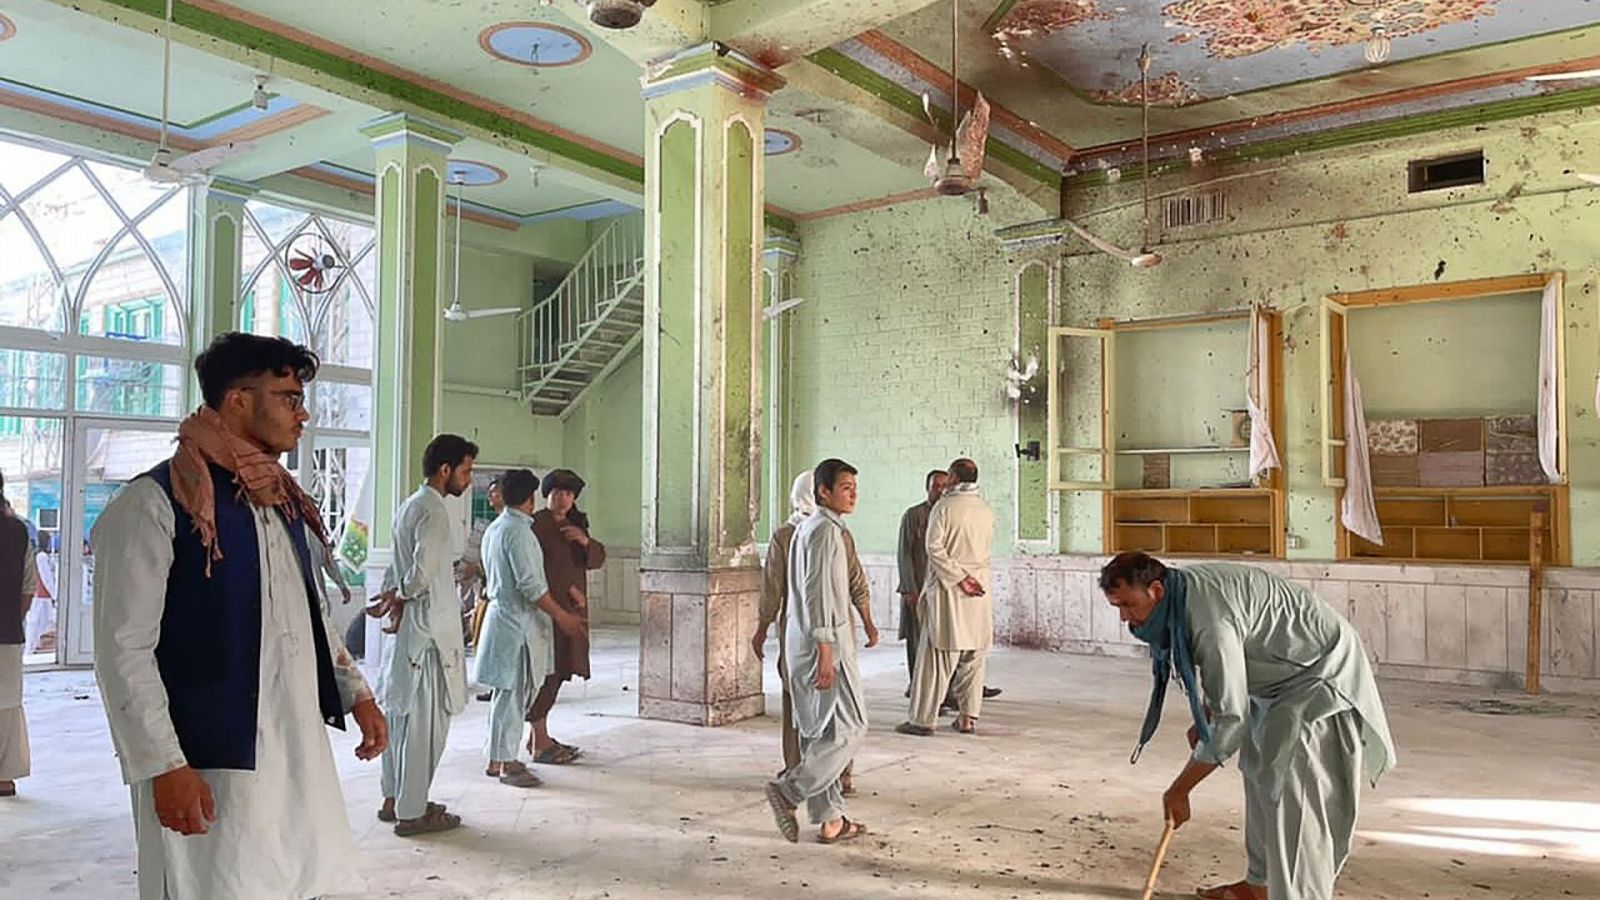 Interior de la mezquita de Kandahar donde se ha producido el atentado contra la comunidad chií (Afganistán). Foto: JAVED TANVEER / AFP